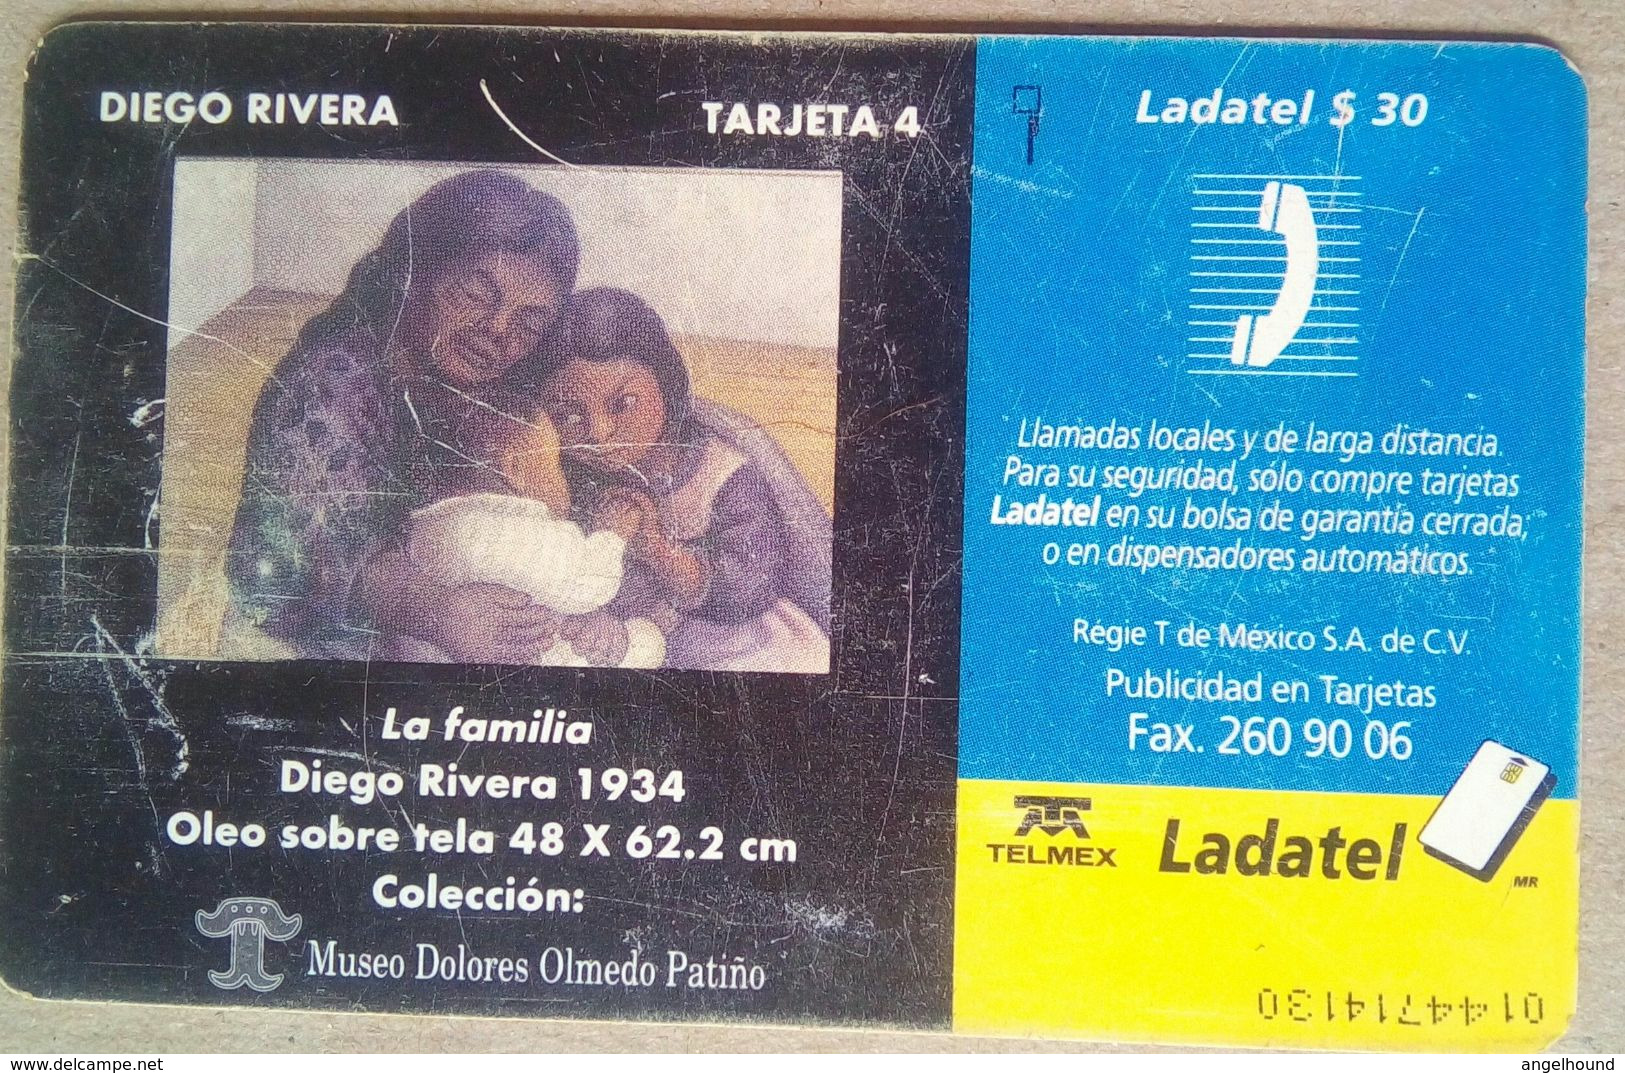 Ladatel $30 La Familia By Diego Rivera Tarjeta 4 - Mexico